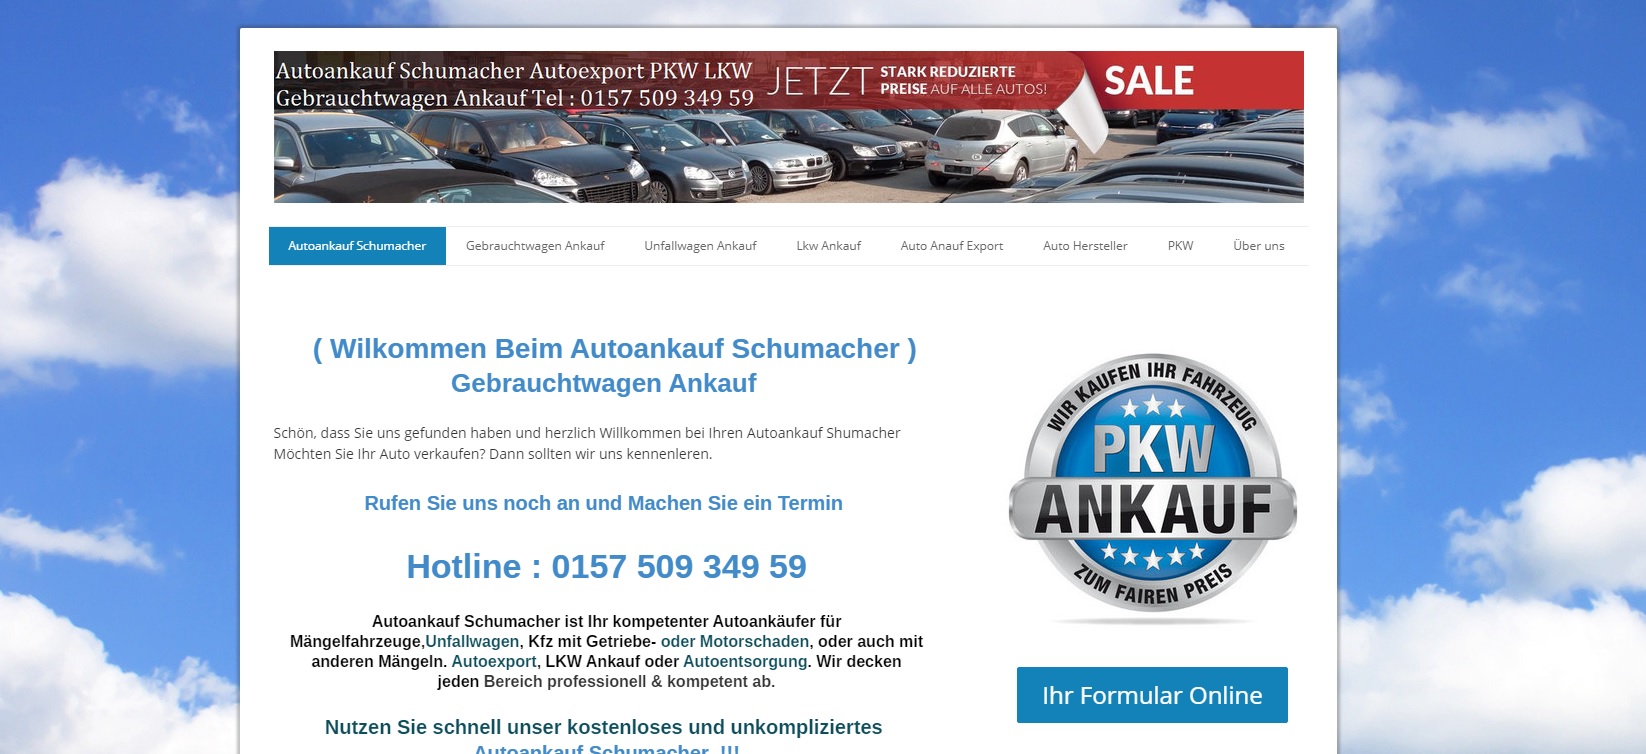 Autoankauf Duisburg – Autoankauf Schumacher ist Ihr kompetenter Autoankäufer für Mängelfahrzeuge,Unfallwagen, Kfz mit Getriebe- oder Motorschaden